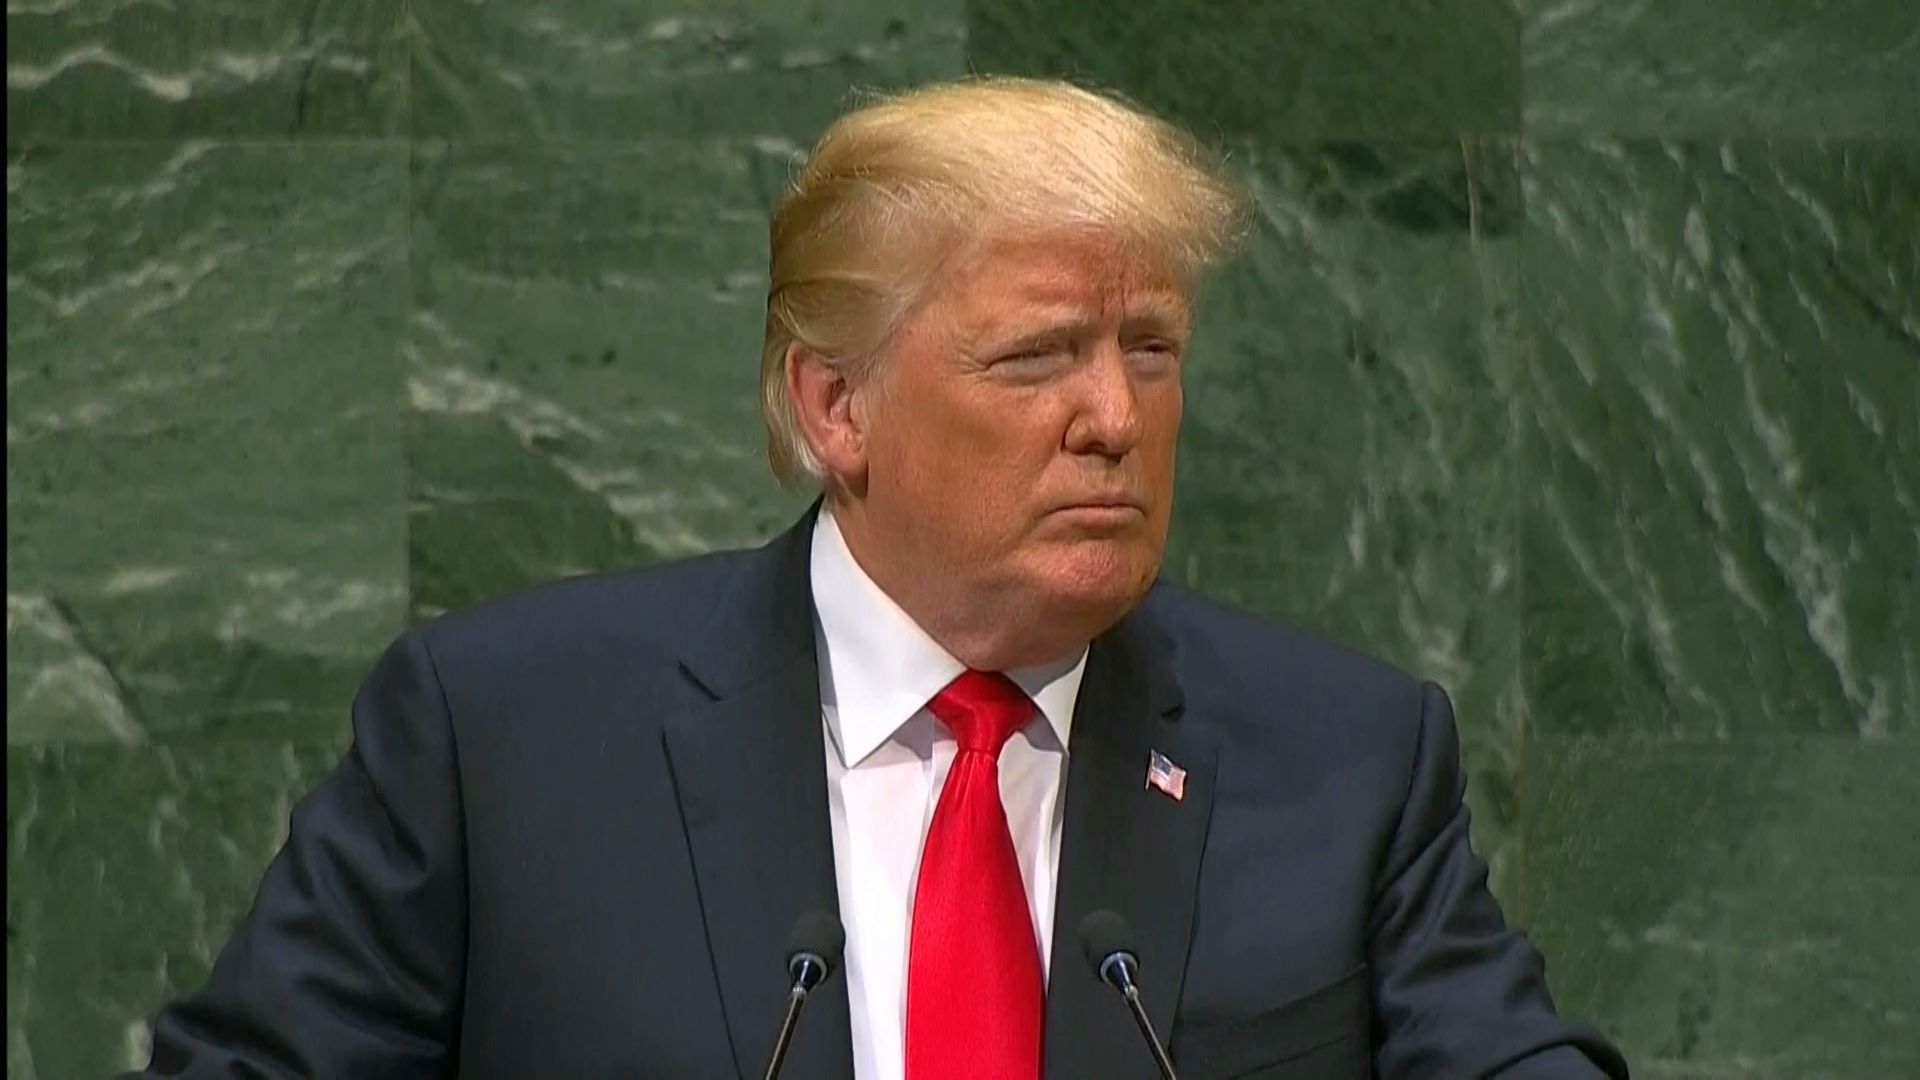 Trump addresses UN General Assembly